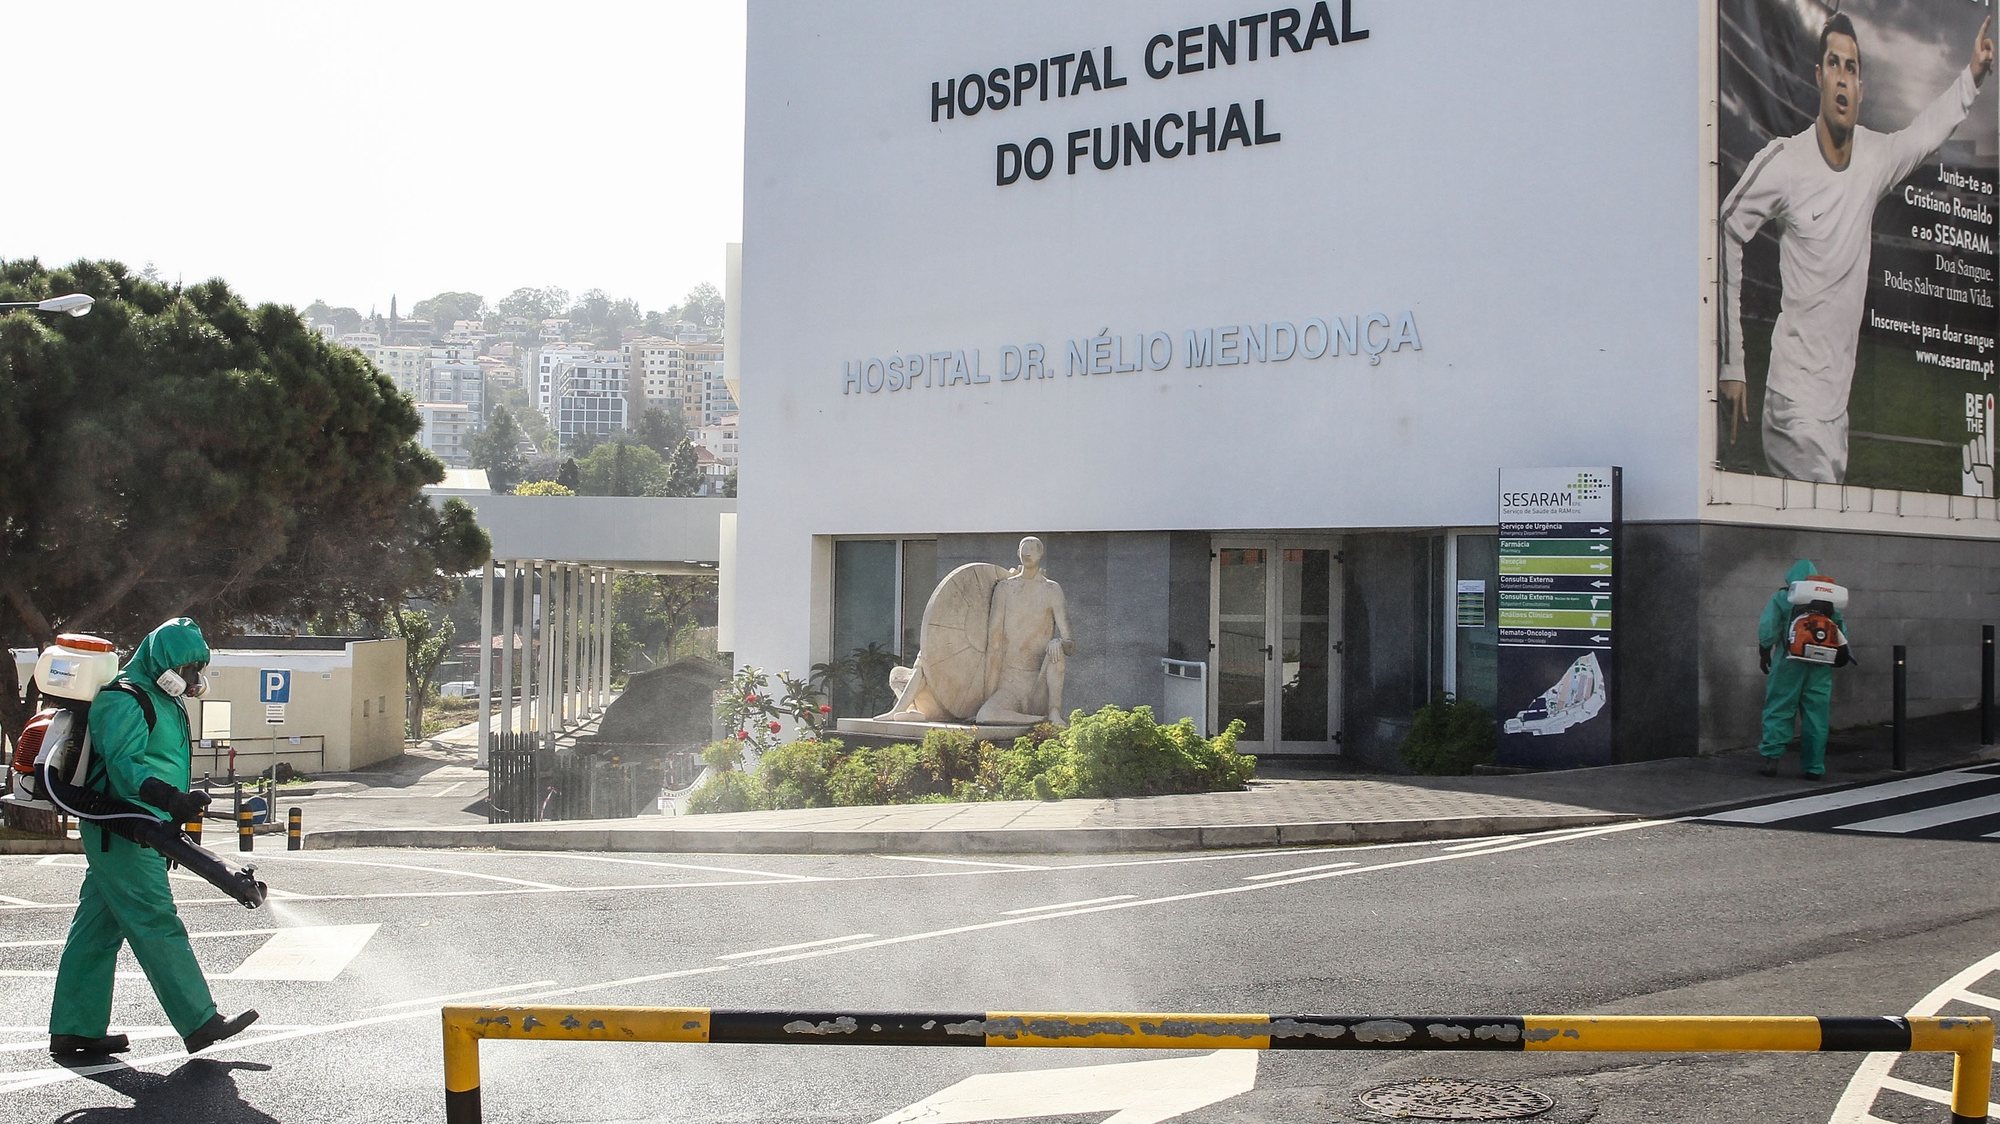 Trabalhos de desinfeção no exterior do Hospital Dr. Nélio Mendonça (Hospital do Funchal), devido à pandemia do covid-19, no Funchal, 6 de abril de 2020. Em Portugal, registaram-se 311 mortes e 11.730 infeções confirmadas, segundo o balanço feito hoje pela Direção-Geral da Saúde (DGS). HOMEM DE GOUVEIA/LUSA